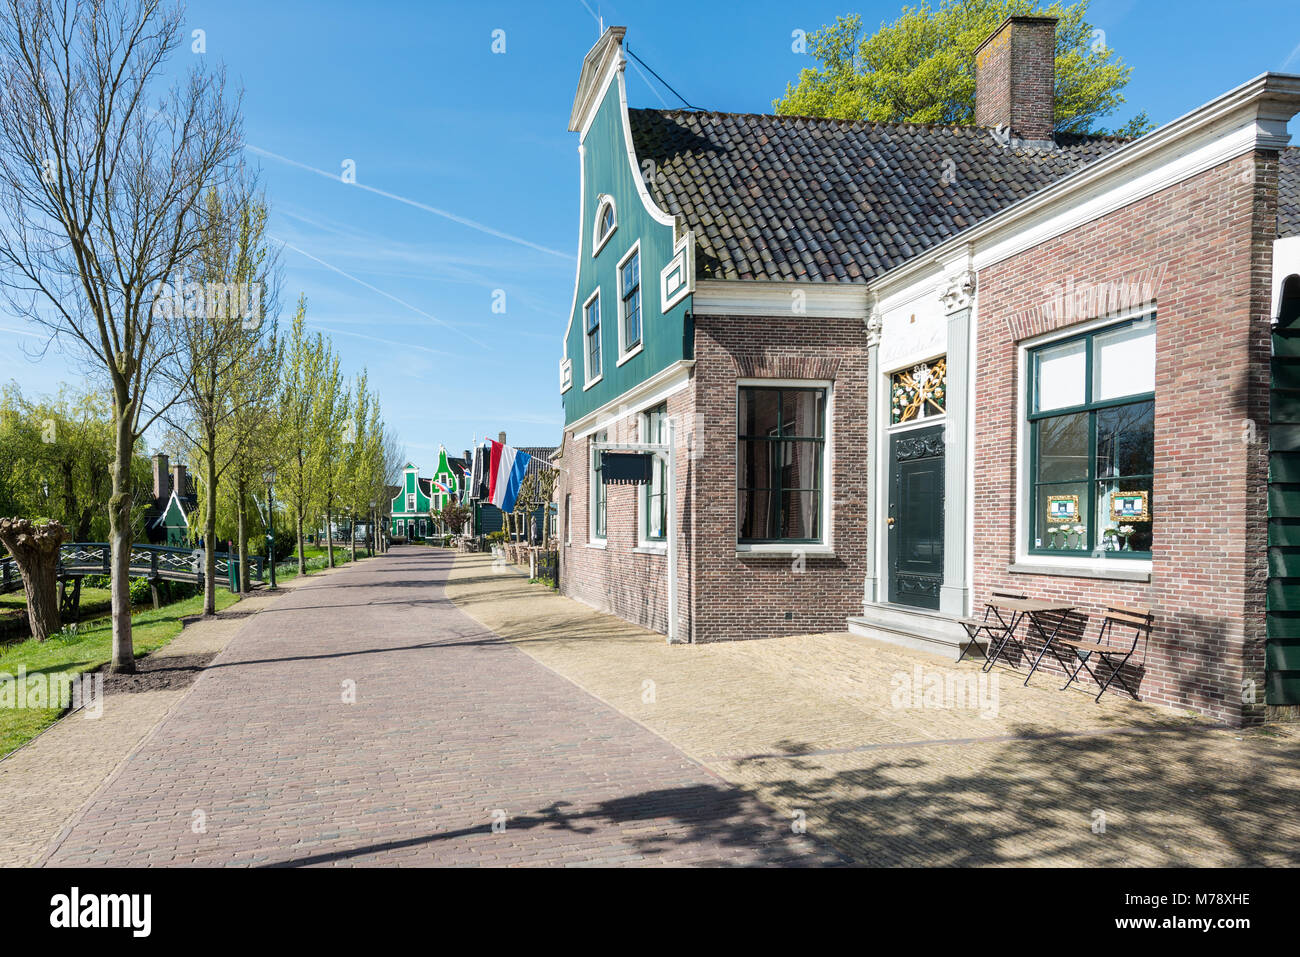 Typisch holländischen Häusern aus Stein, im alten Dorf in der Nähe von Amsterdam, Niederlande. Stockfoto